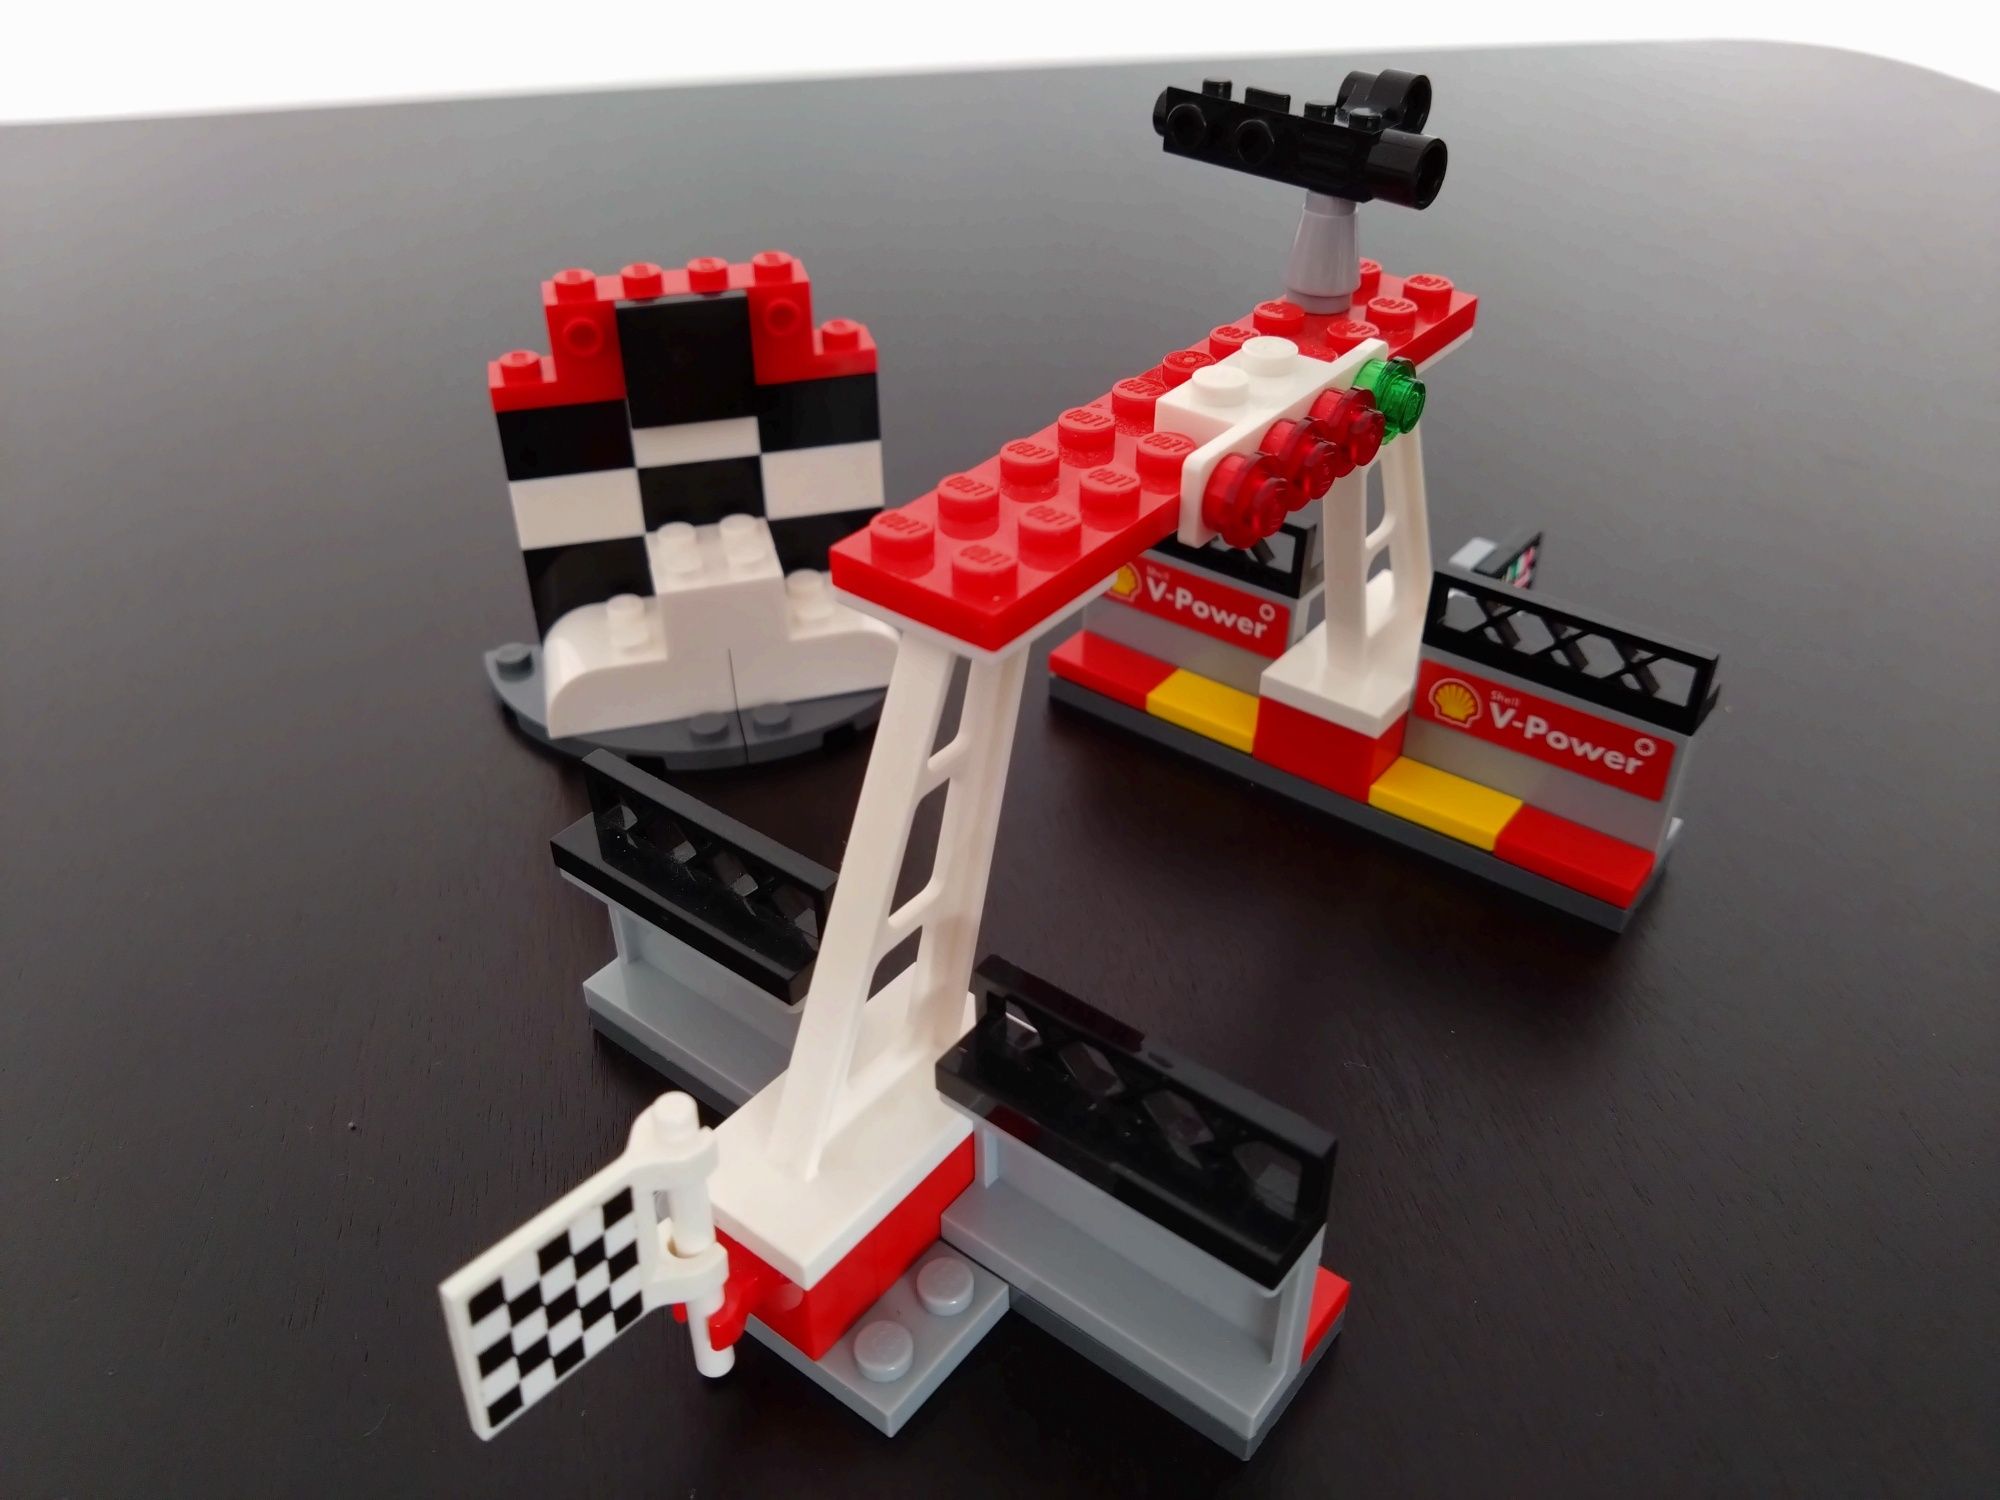 LEGO Shell kultowa kolekcja z 2015 roku z instrukcjami. Polecam!